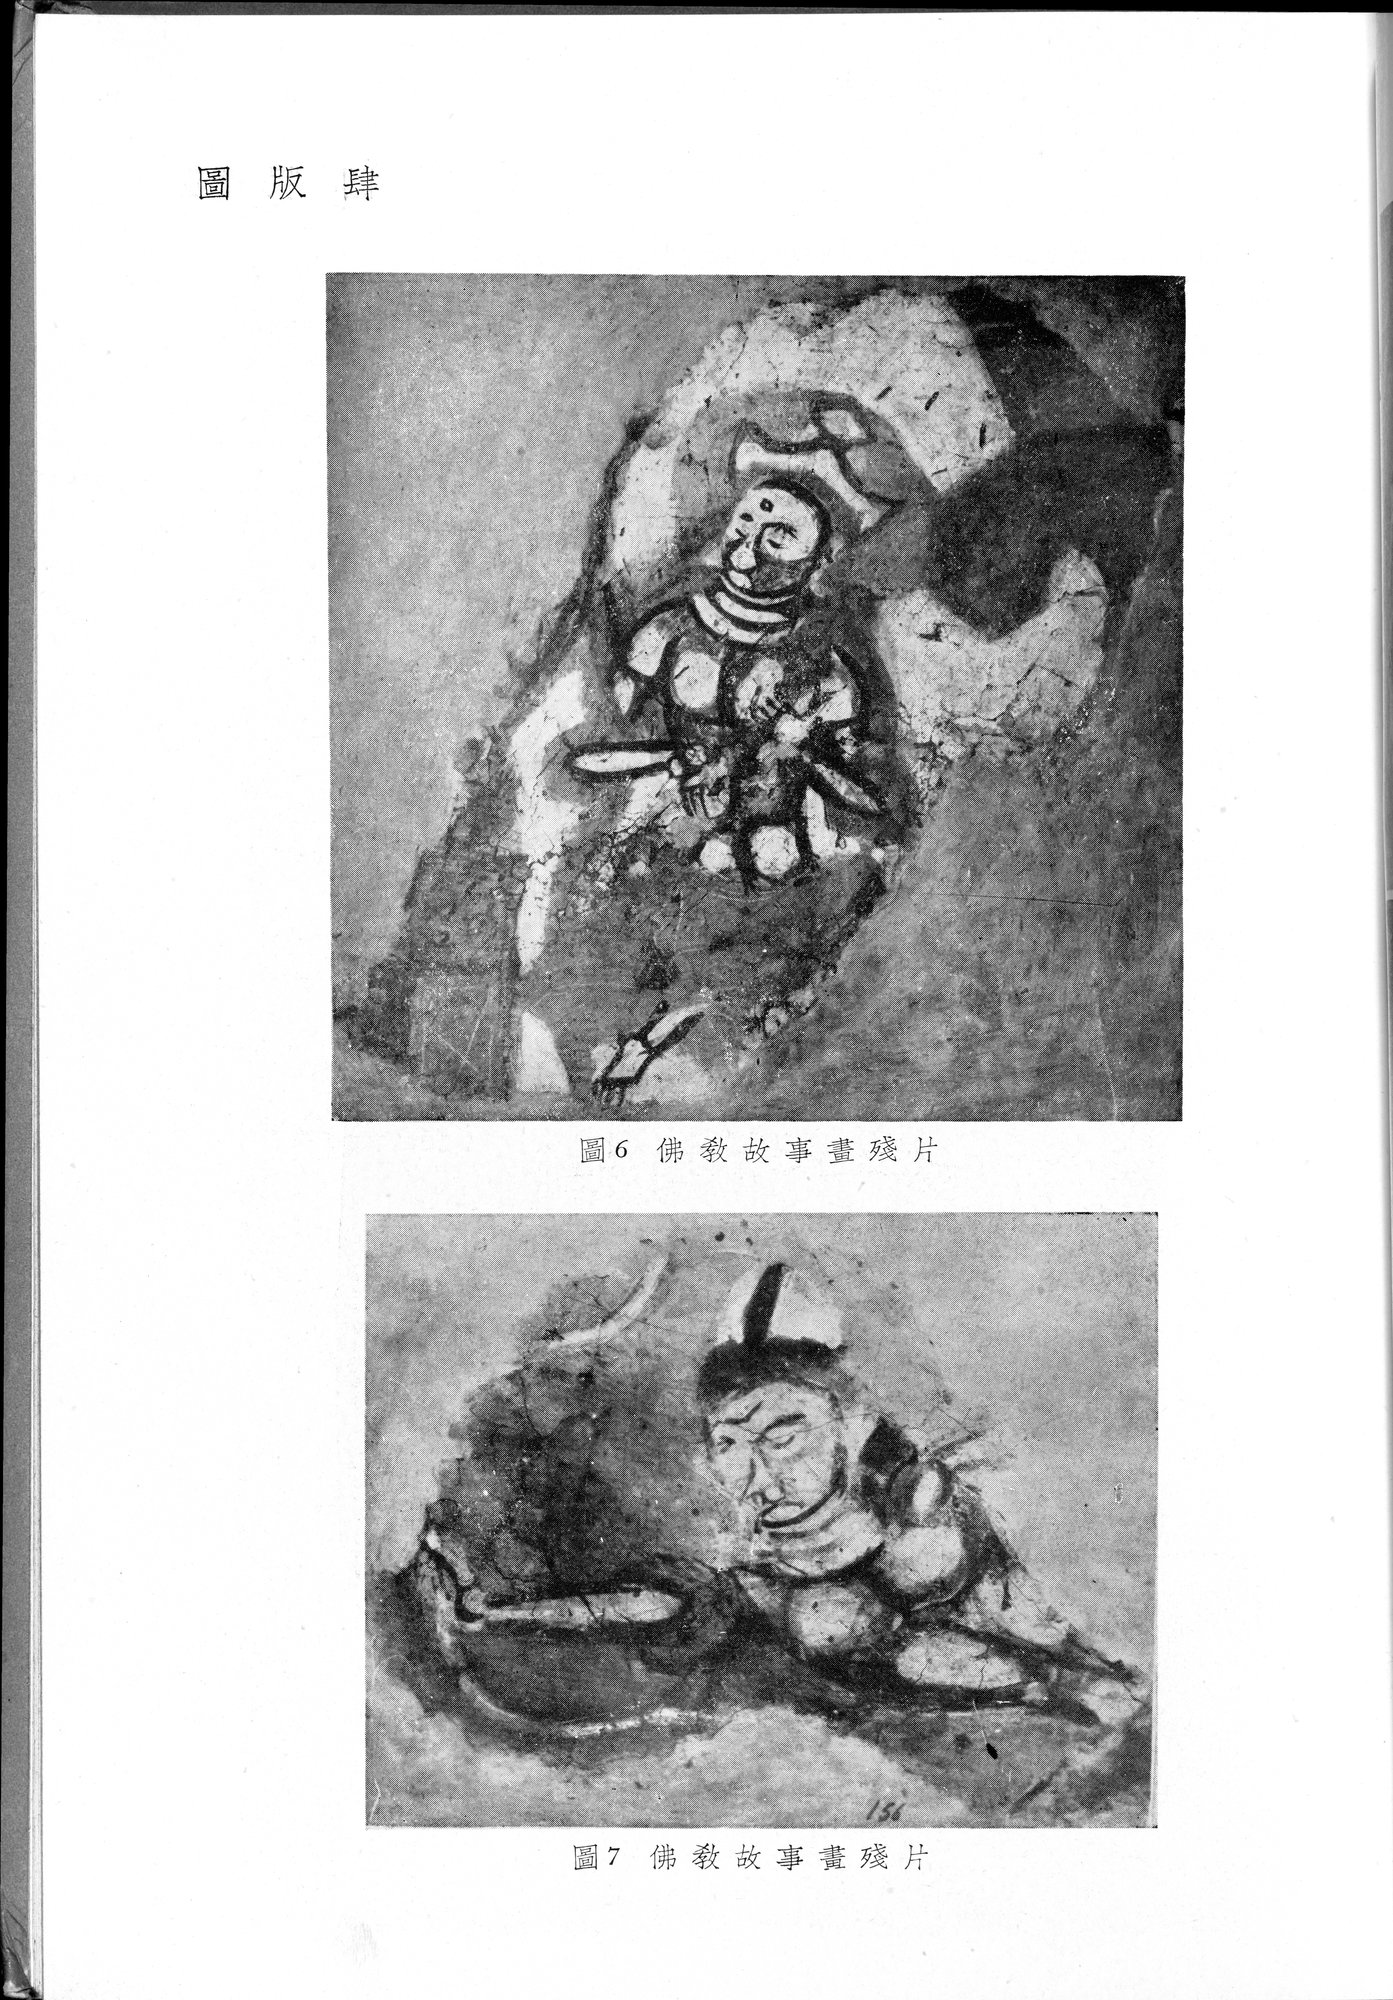 塔里木盆地考古記 : vol.1 / Page 213 (Grayscale High Resolution Image)